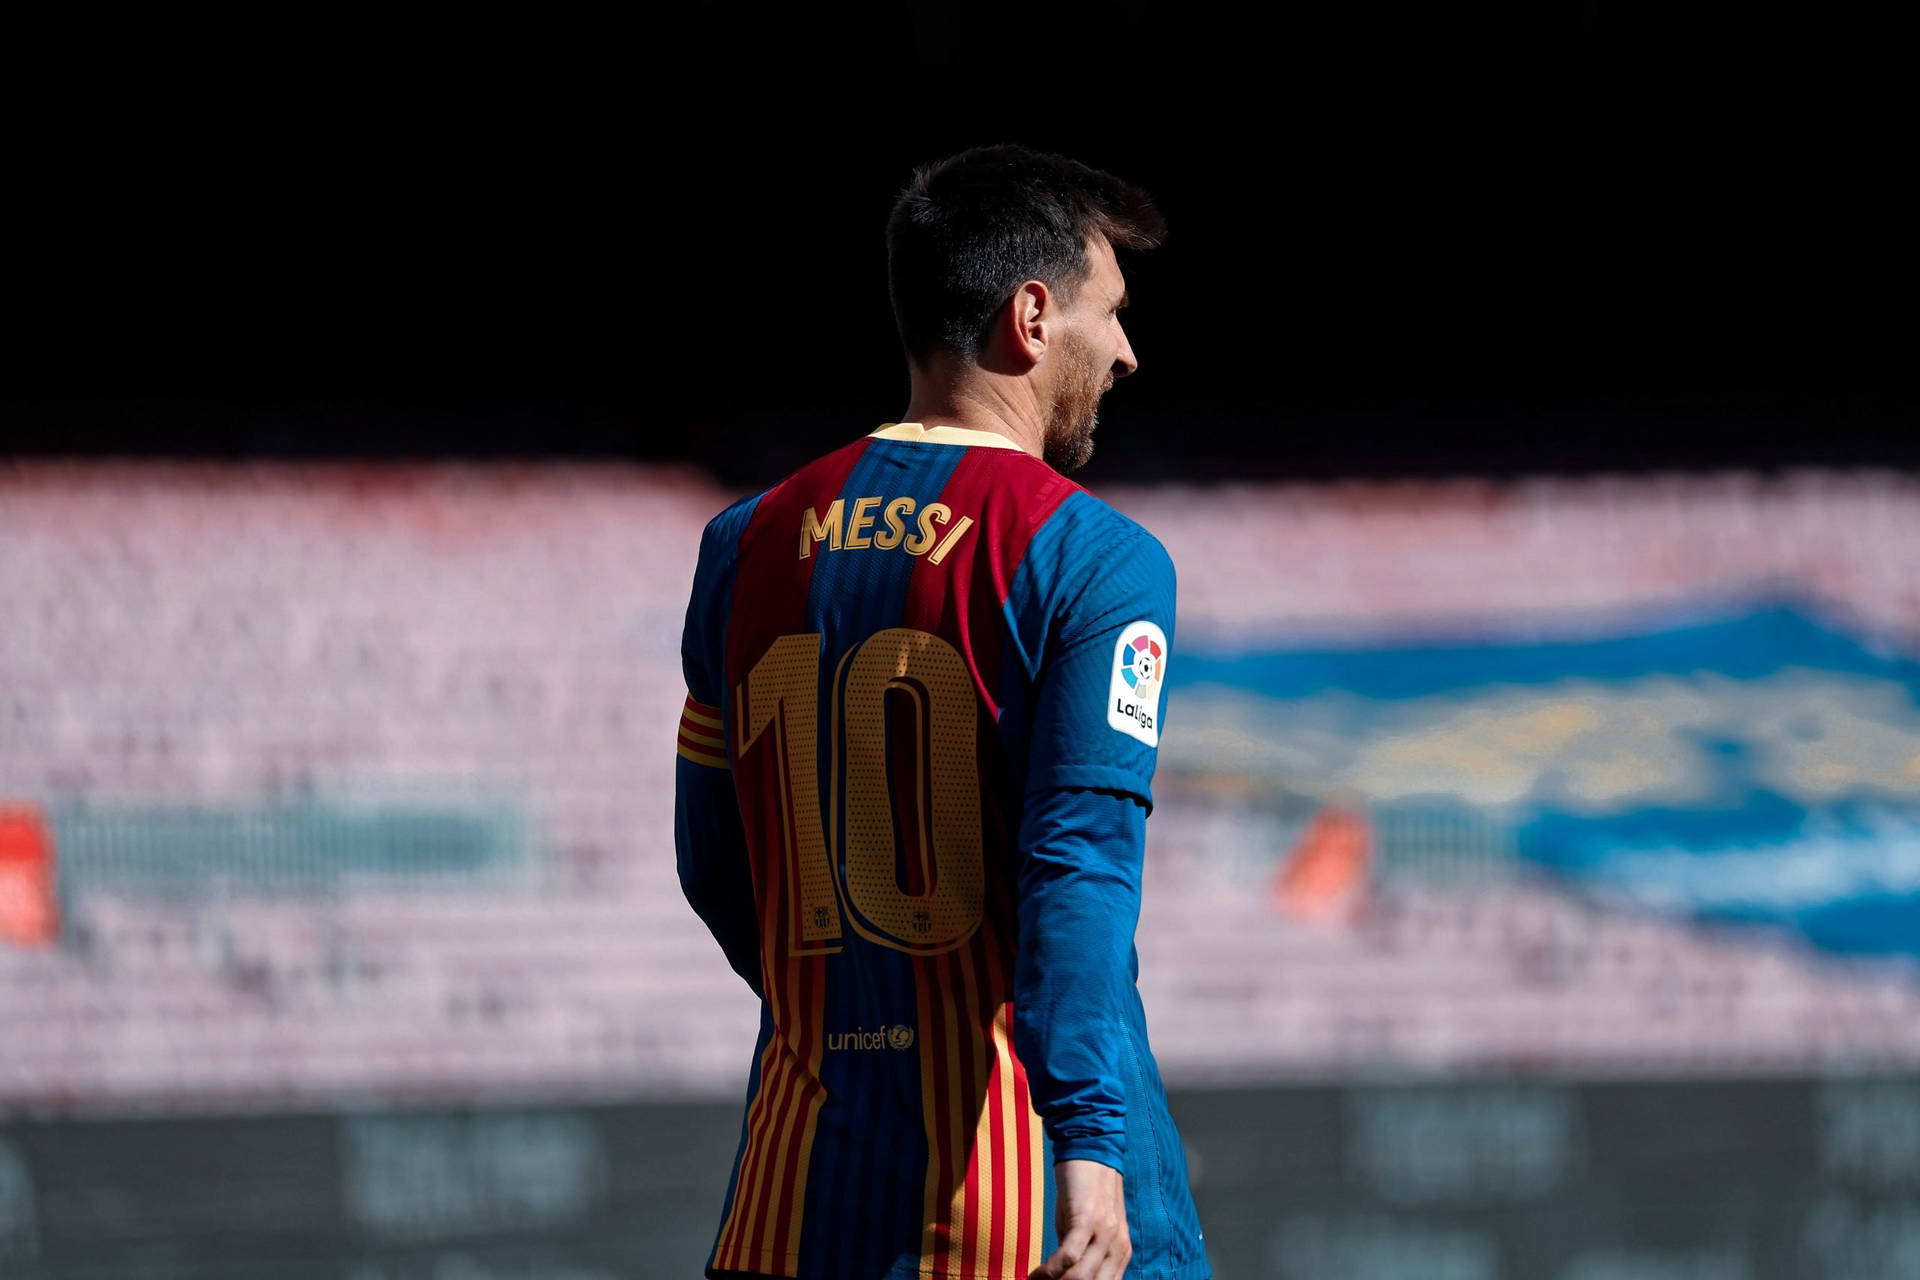 Free Messi Wallpaper Downloads: Bạn có yêu thích cầu thủ bóng đá nổi tiếng Lionel Messi và đang tìm kiếm một bức ảnh nền phù hợp với sở thích của mình? Đừng ngần ngại tải về những hình nền đầy ấn tượng và hút mắt tại đây. Các bức ảnh tuyệt đẹp được tặng kèm theo, miễn phí hoàn toàn.